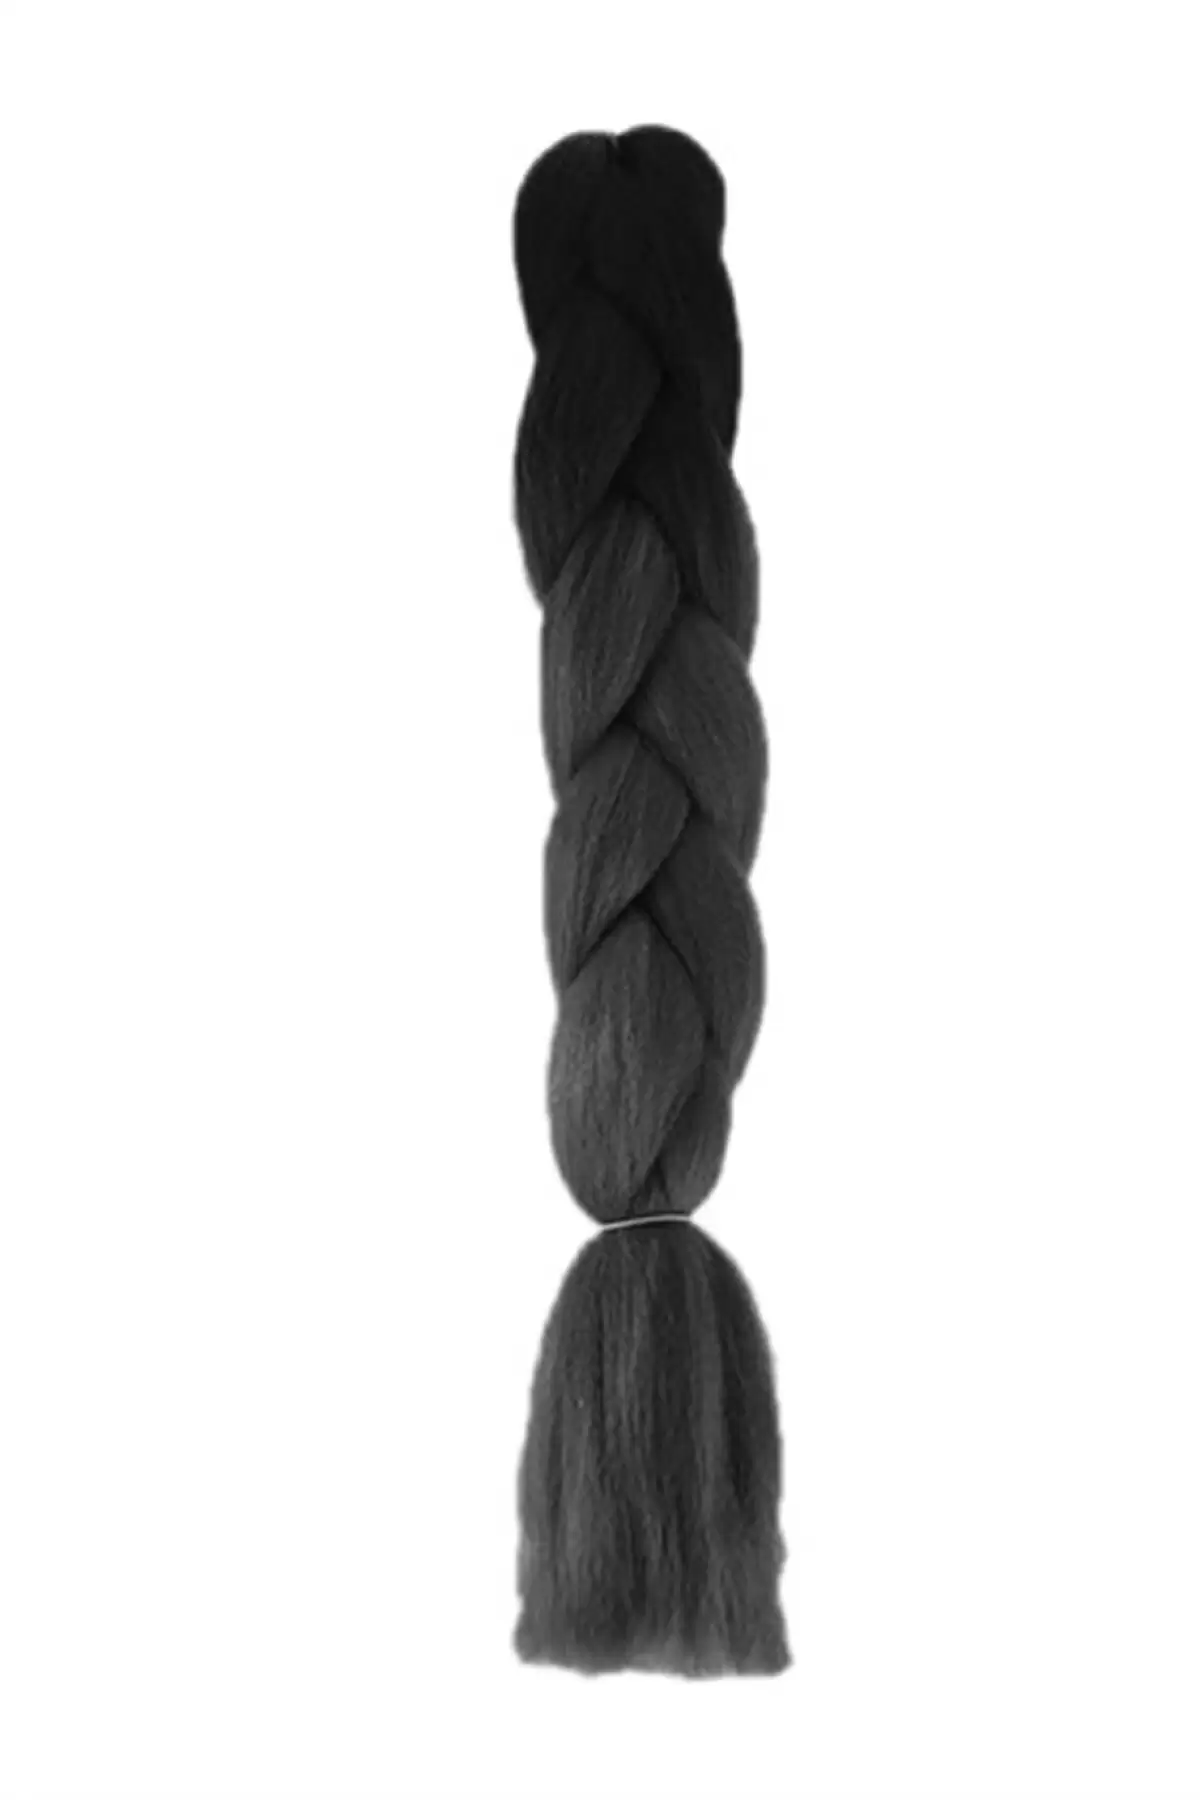 Iki Renk Ombreli Afrika Zenci Örgüsü Box Braid Sentetik Saç 60cm 100gr